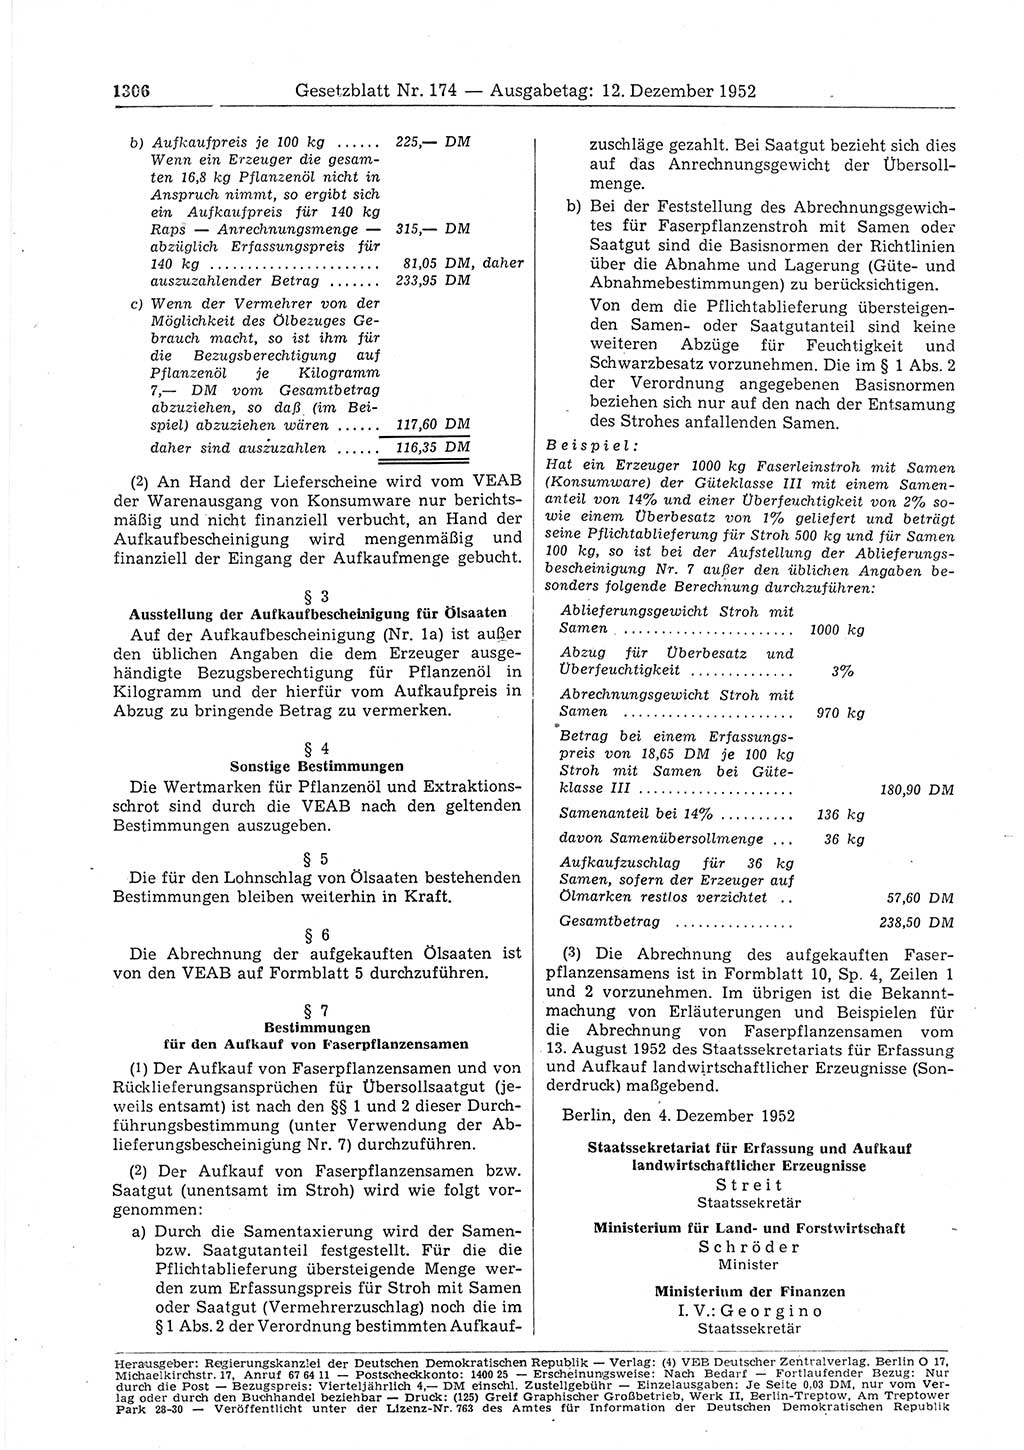 Gesetzblatt (GBl.) der Deutschen Demokratischen Republik (DDR) 1952, Seite 1306 (GBl. DDR 1952, S. 1306)